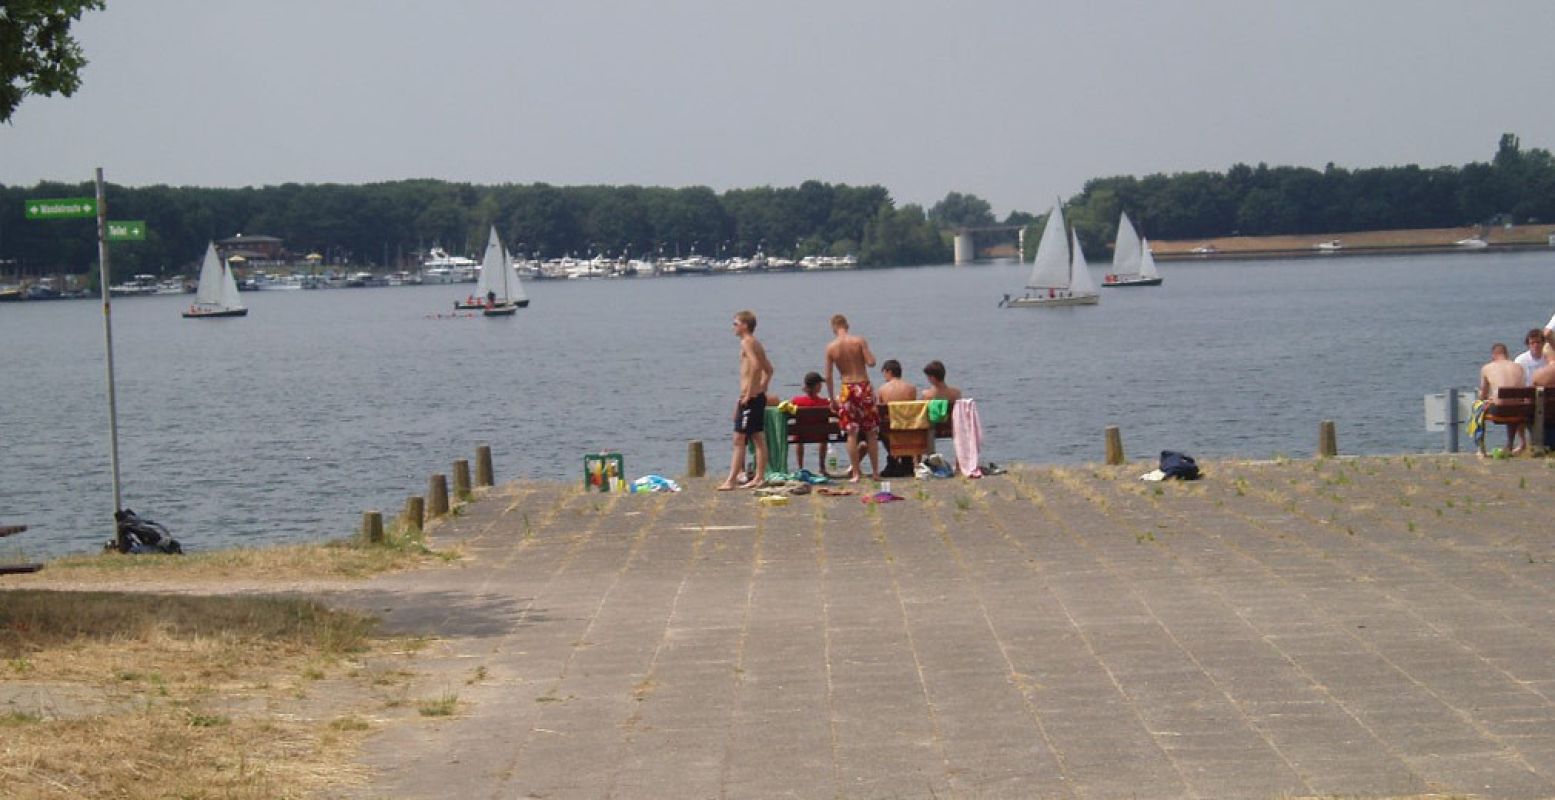 De Mookerplas heeft een open verbinding met de Maas, waardoor dit een ideale locatie is voor watersporters. Foto: Leisurelands.